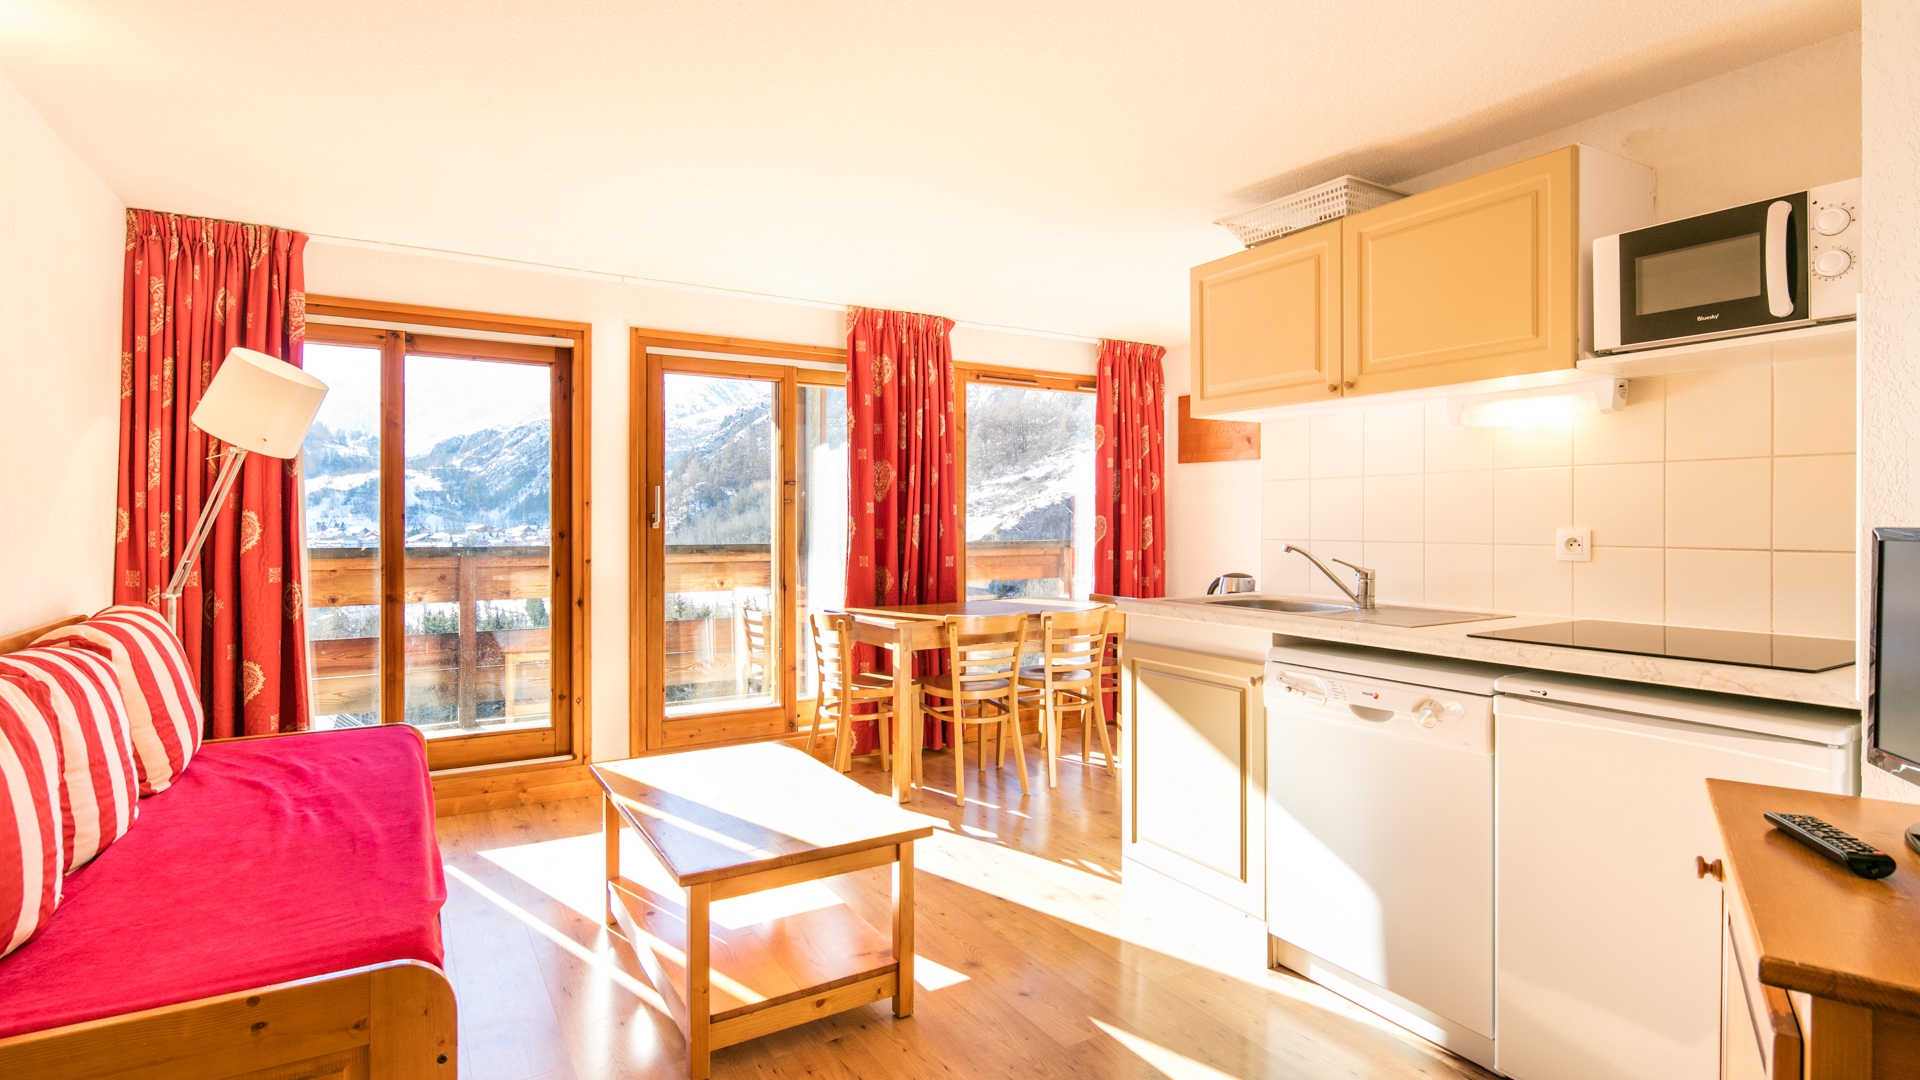 Le Hameau de Valloire: Appartement für 4 Personen - Wohnbereich mit Küchenzeile (Beispiel)